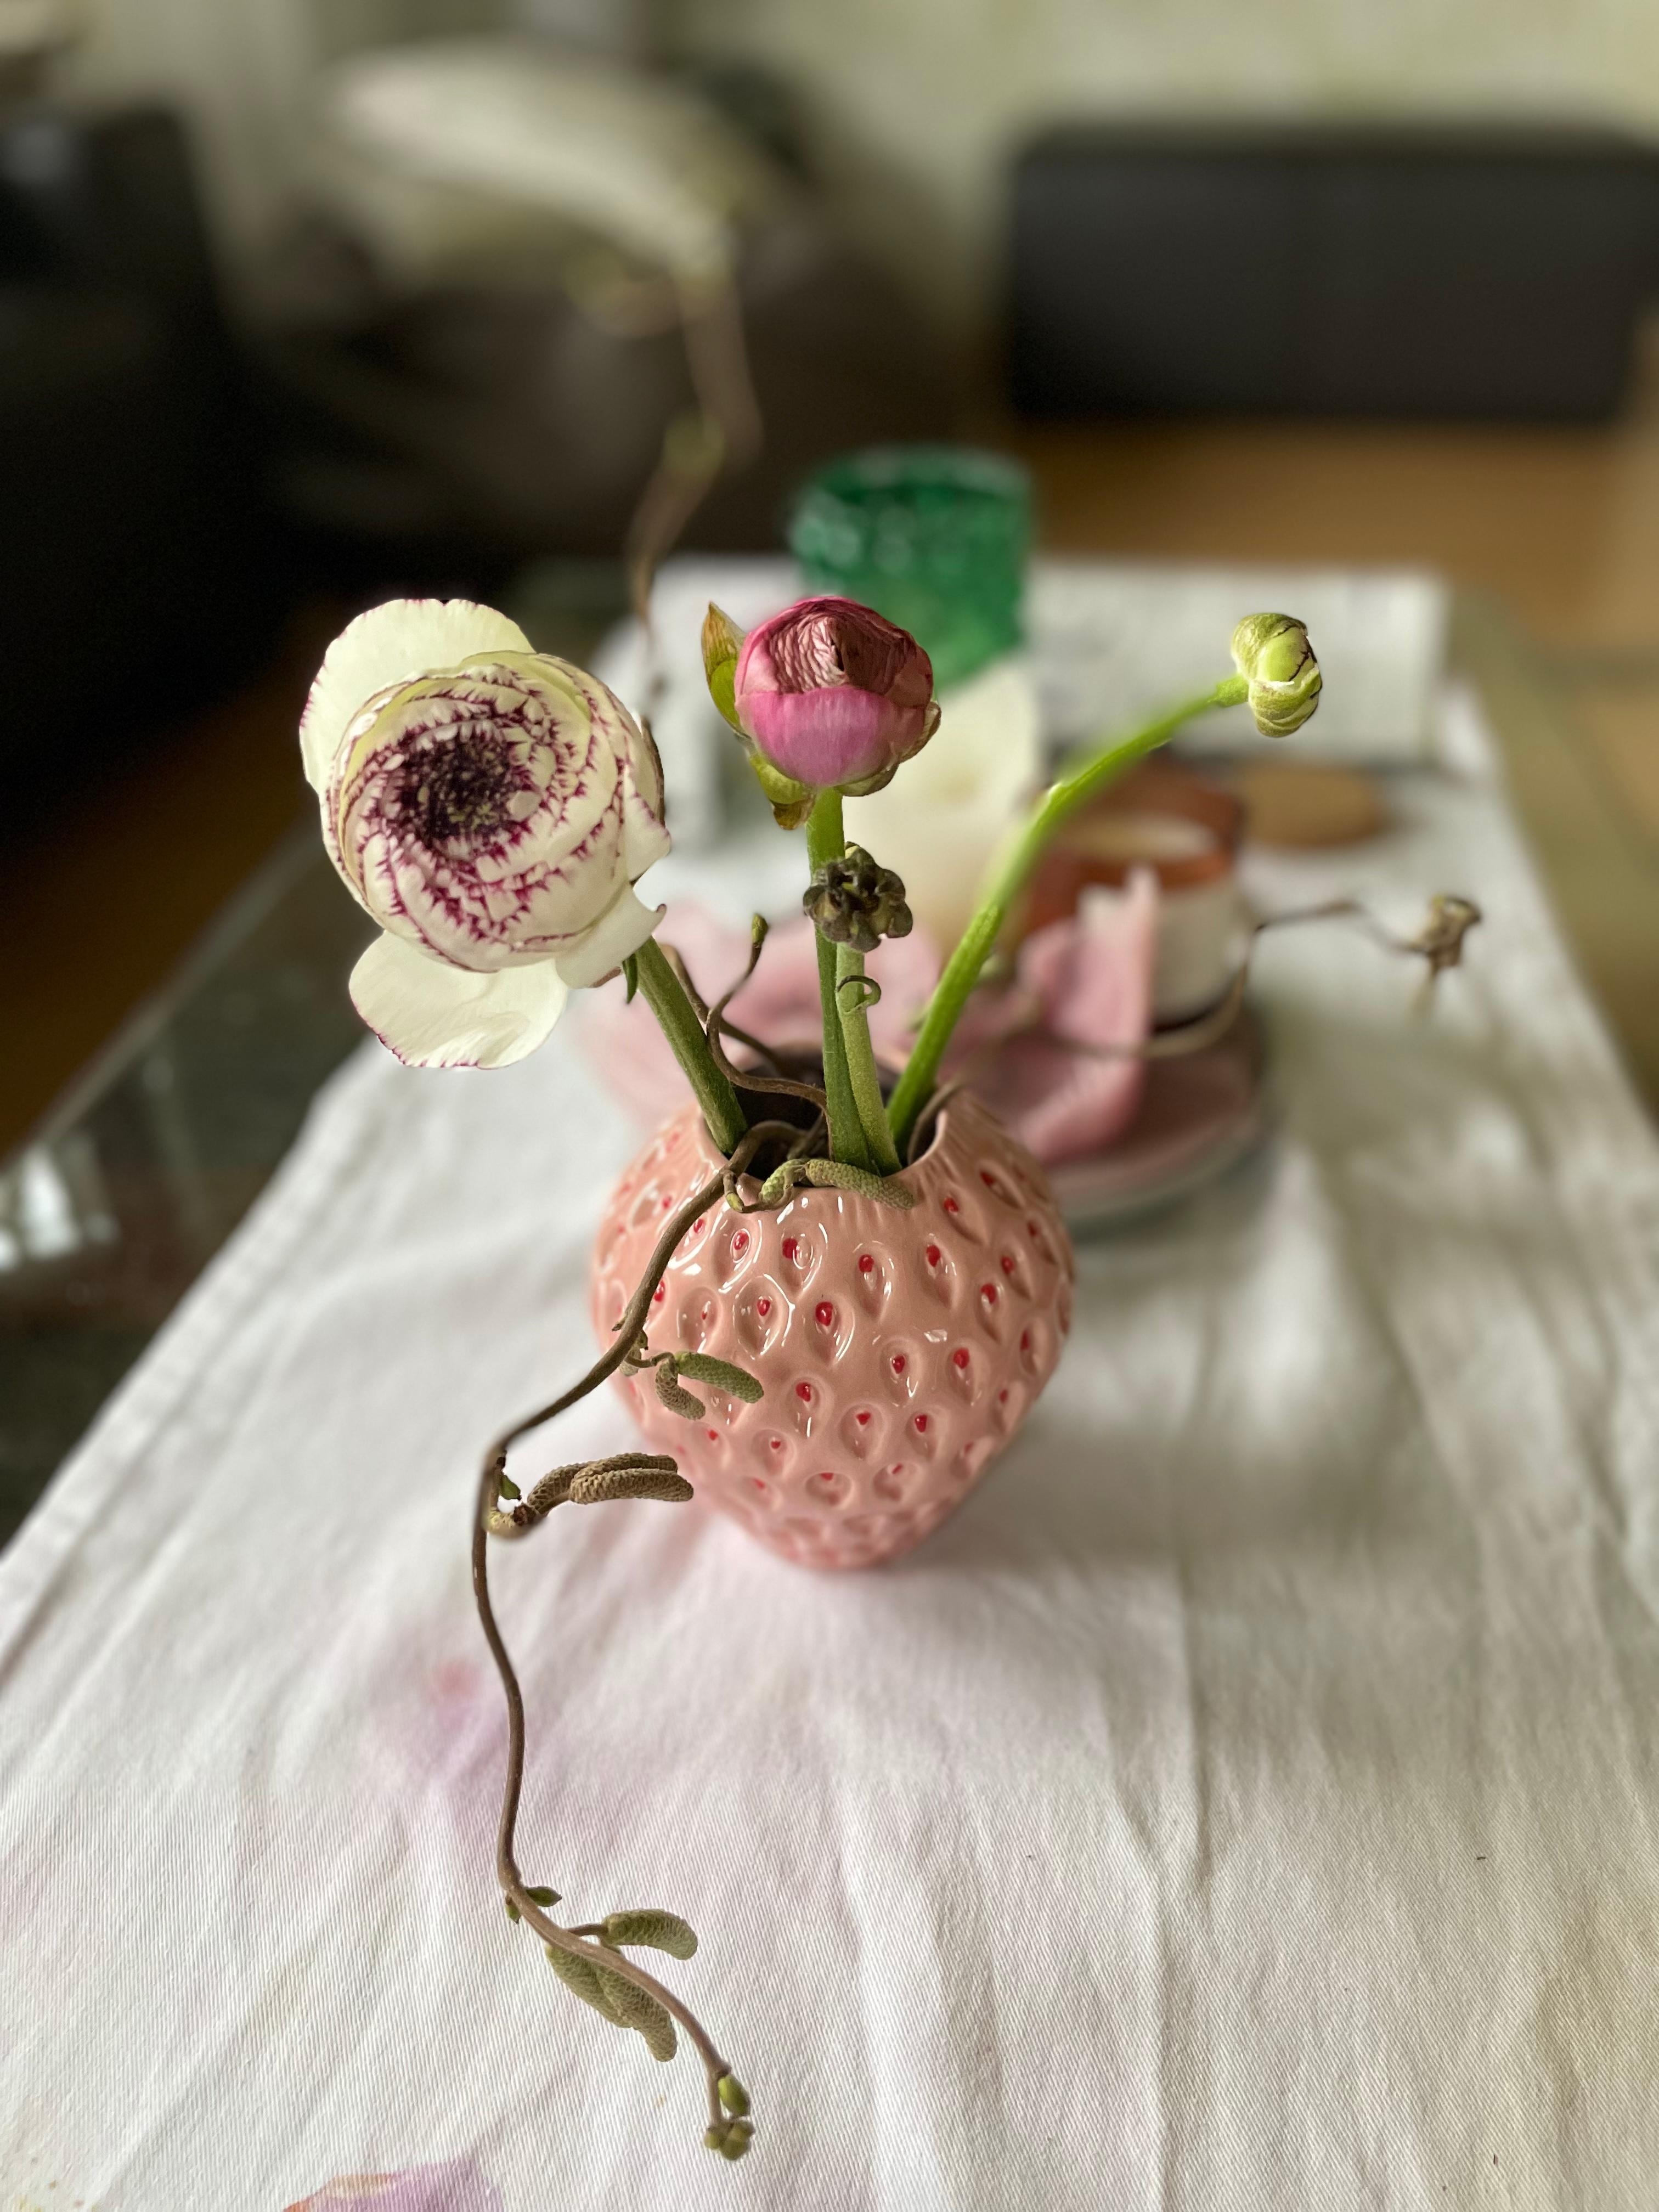 Meine neue Vase #strawberry #ranunkeln #flowers #vase 